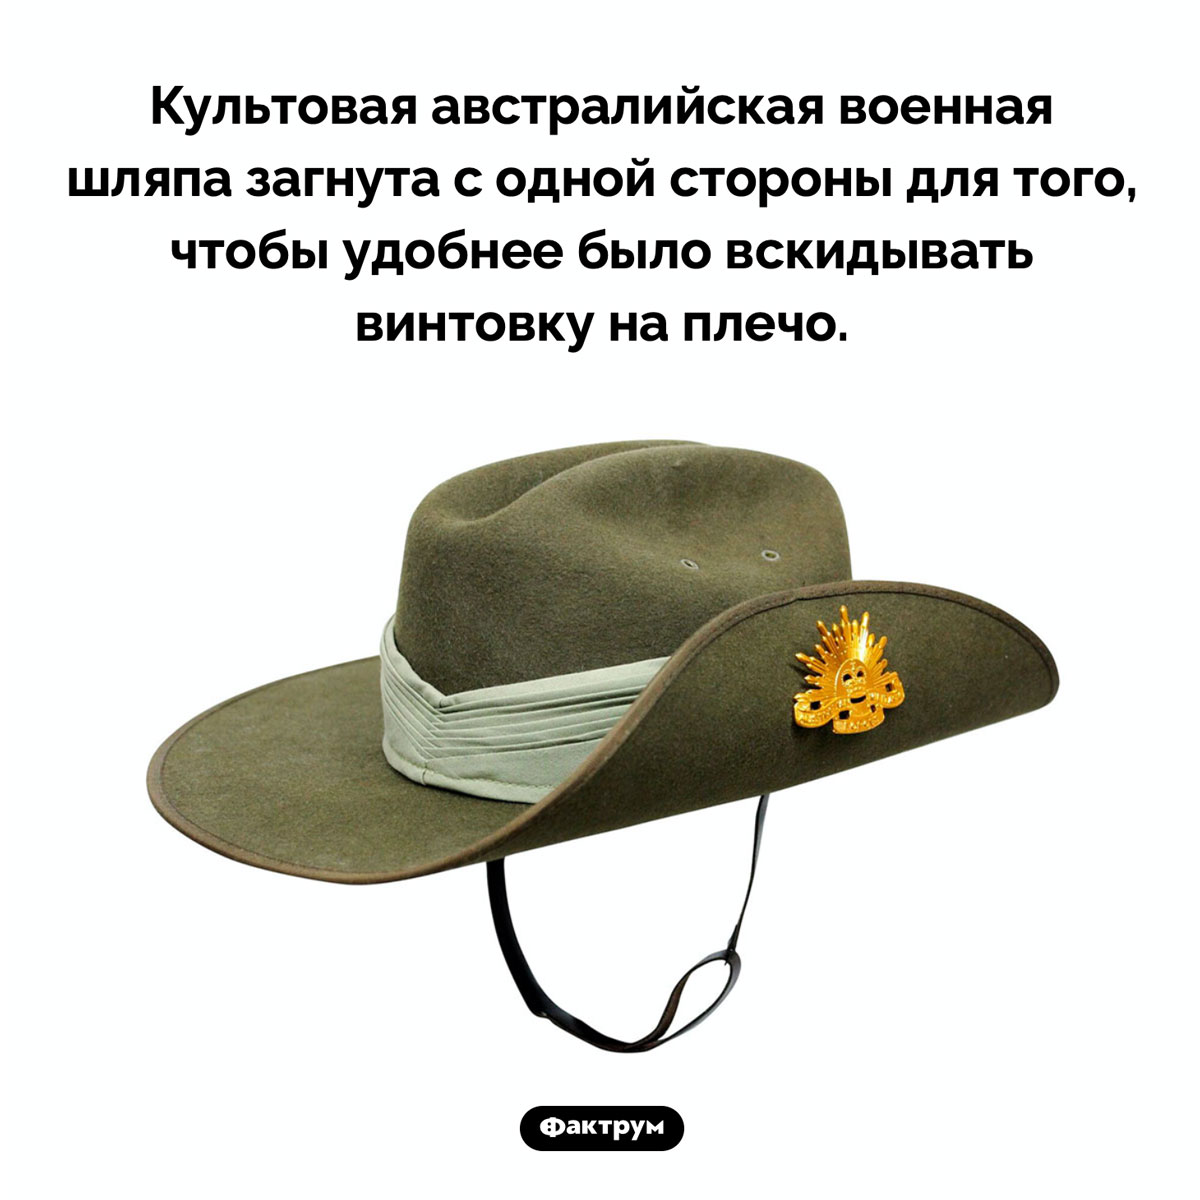 Зачем загнута австралийская военная шляпа. Культовая австралийская военная шляпа загнута с одной стороны для того, чтобы удобнее было вскидывать винтовку на плечо.